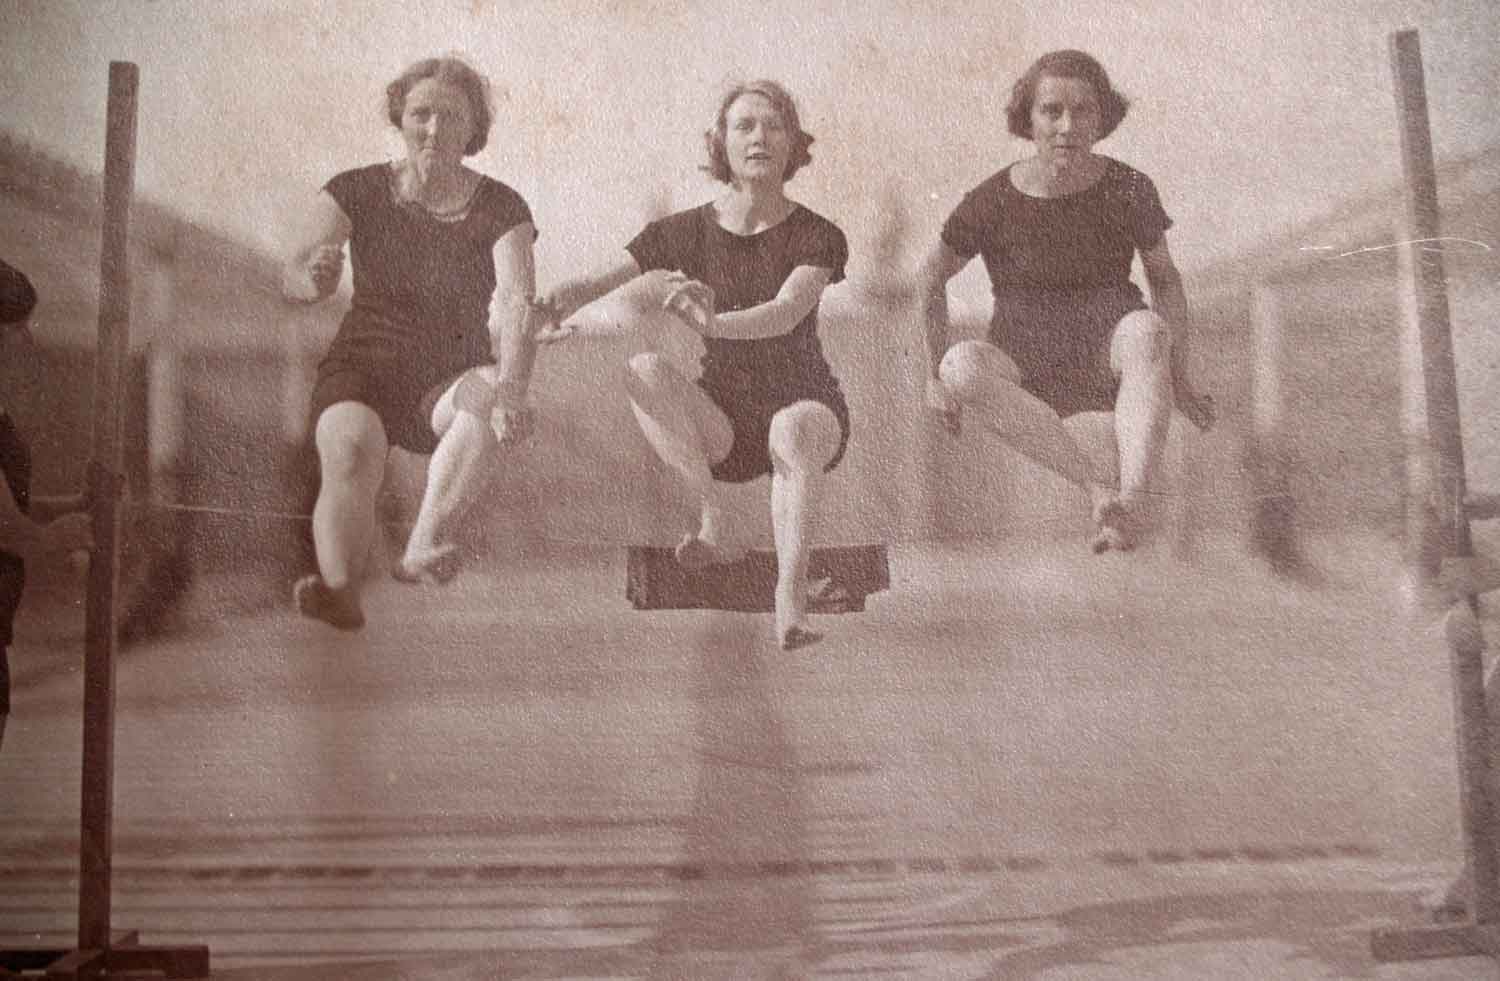 Foto, schwarz-weiß, außen: Drei Frauen in schwarzen Turnanzügen springen in die Luft.